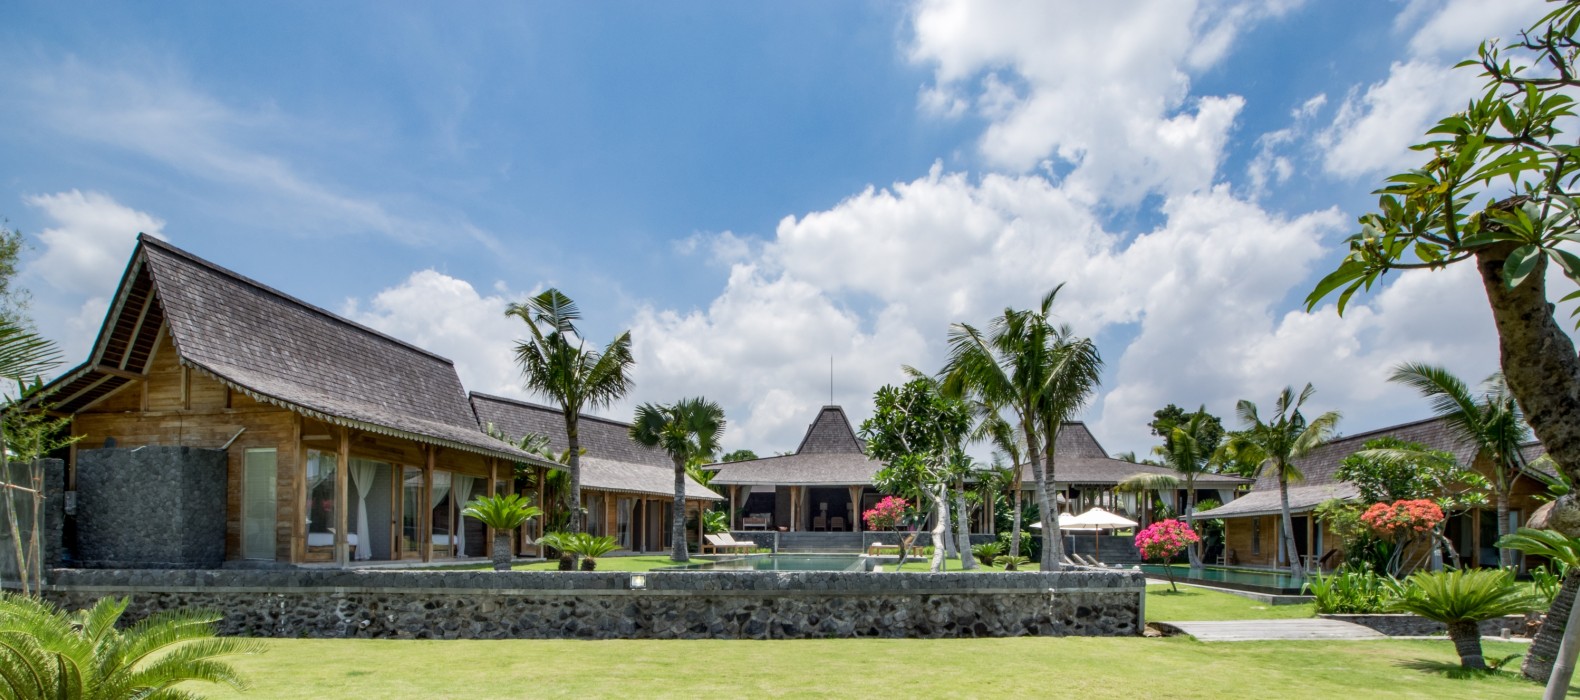 Garden view of Villa Manoa in Bali